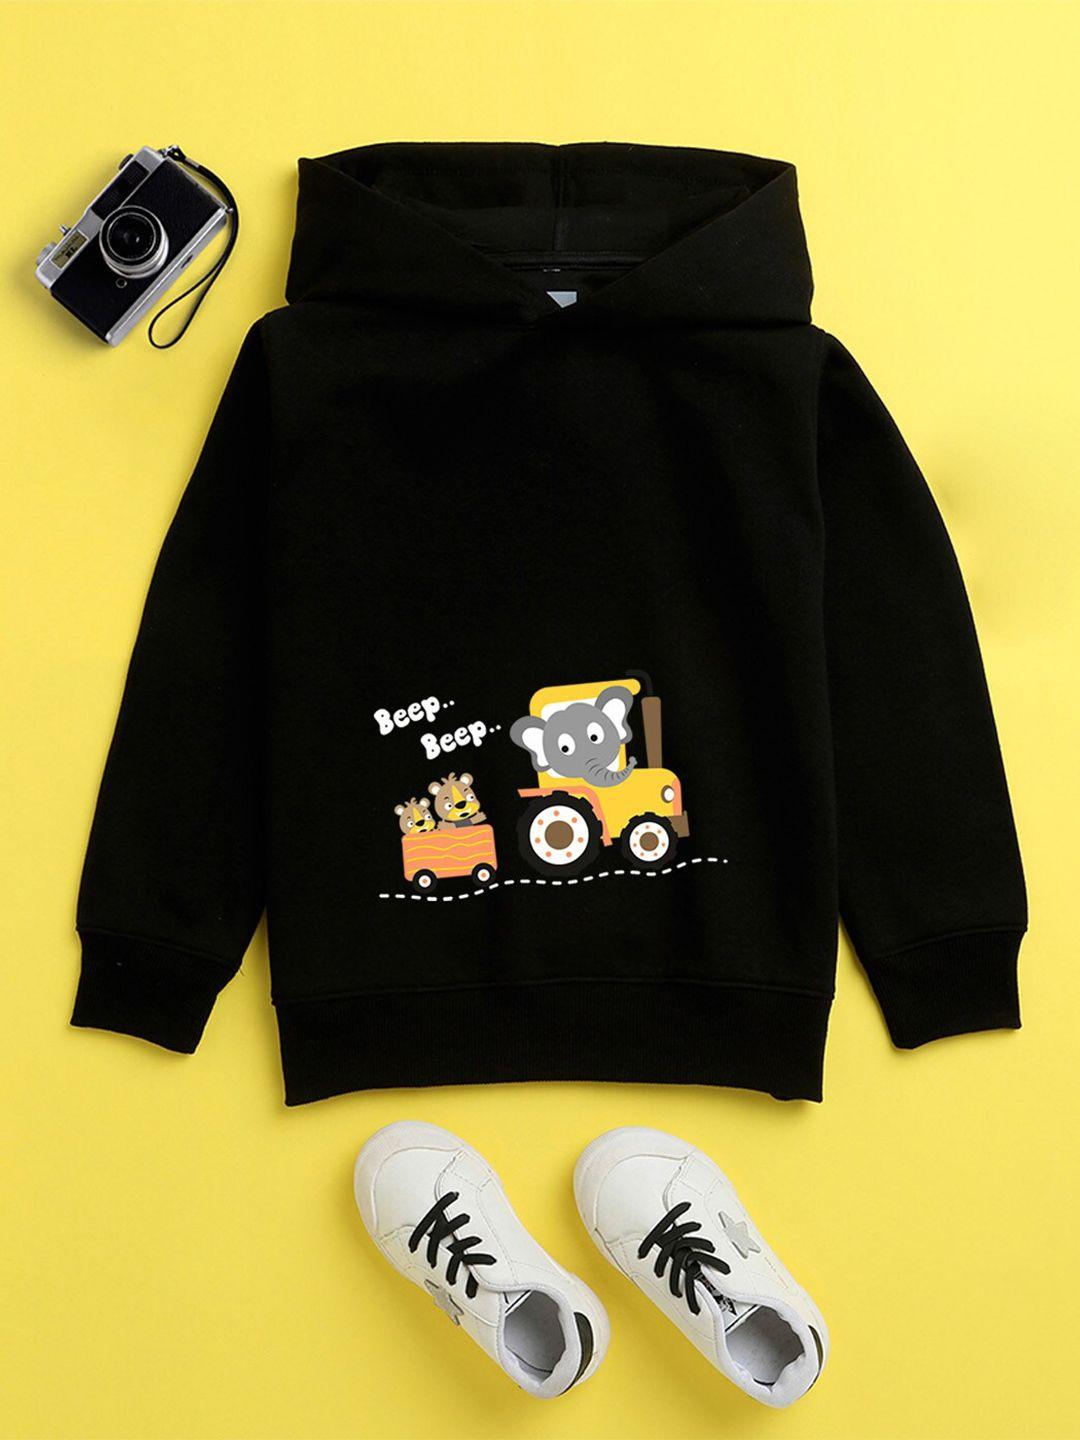 nusyl unisex kids black printed hooded sweatshirt